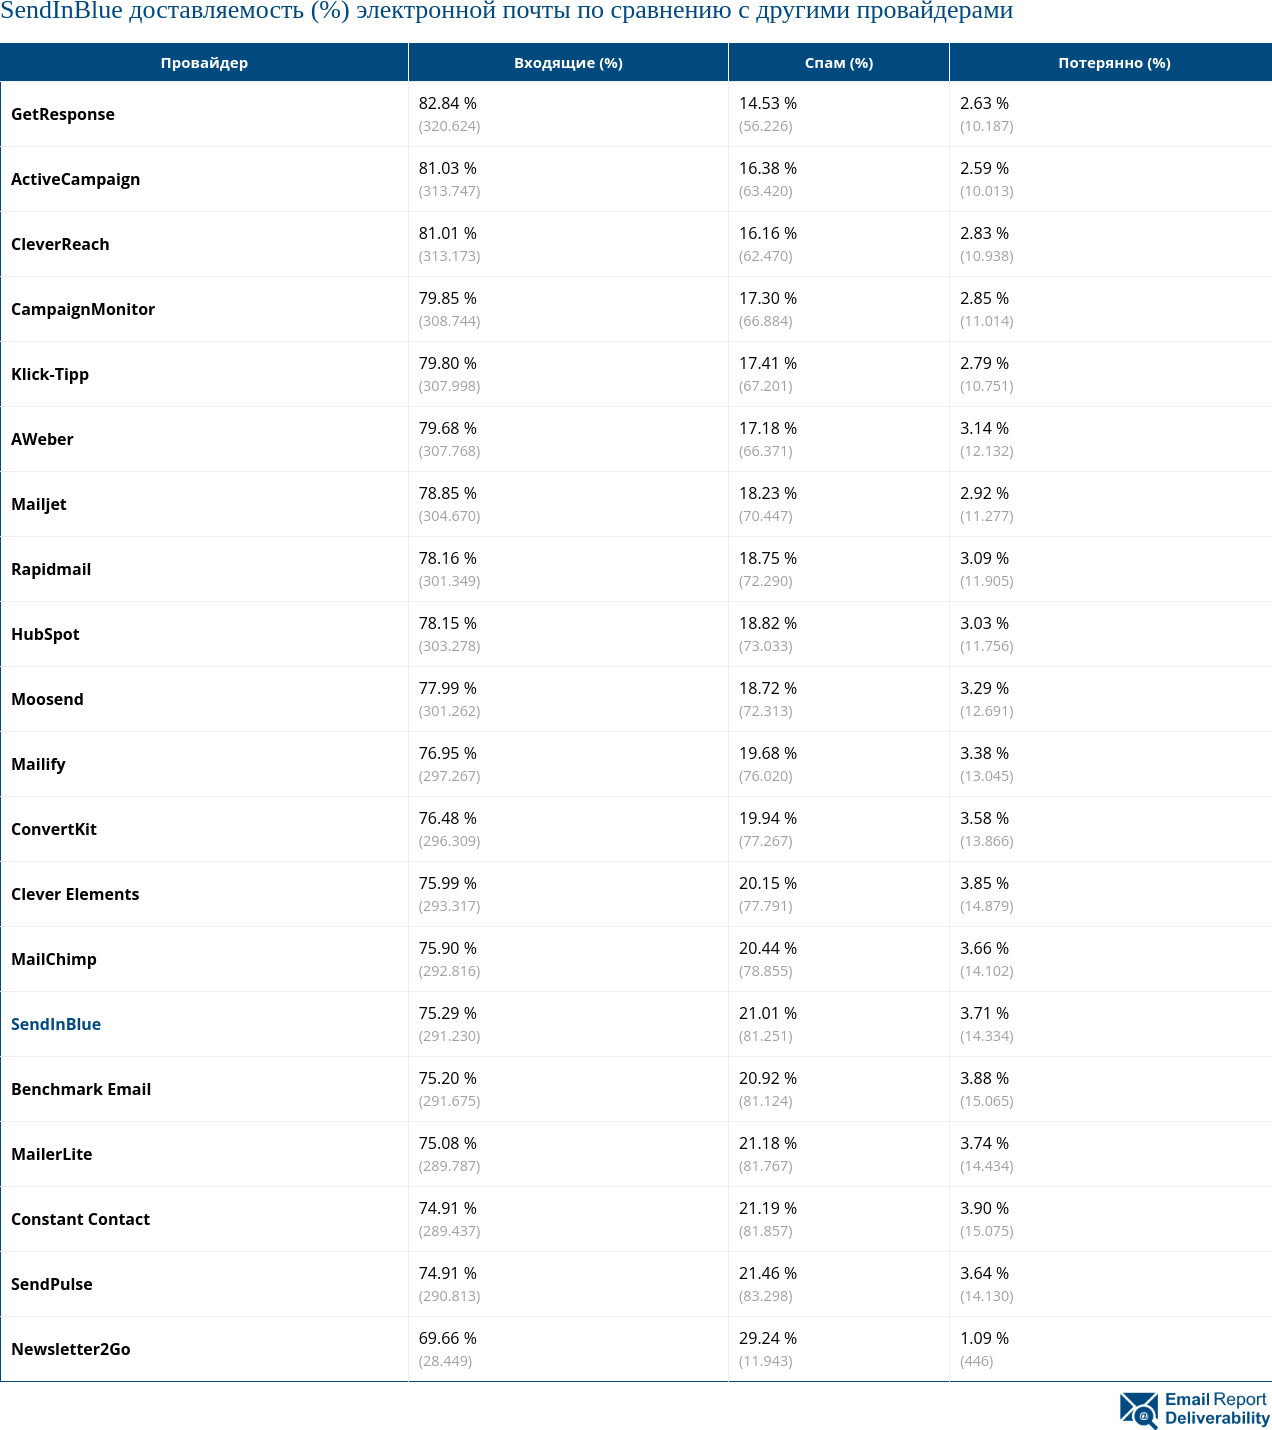 SendInBlue доставляемость (%) электронной почты по сравнению с другими провайдерами